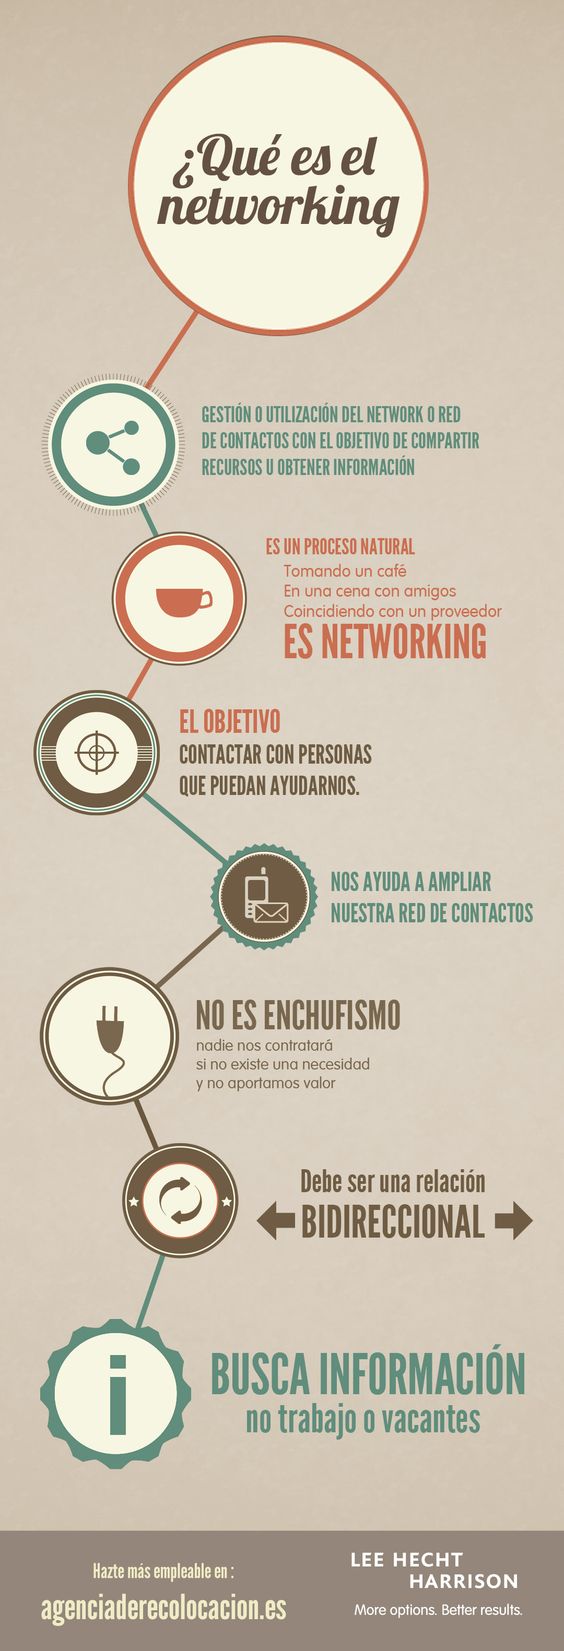 Qué es el networking #infografia